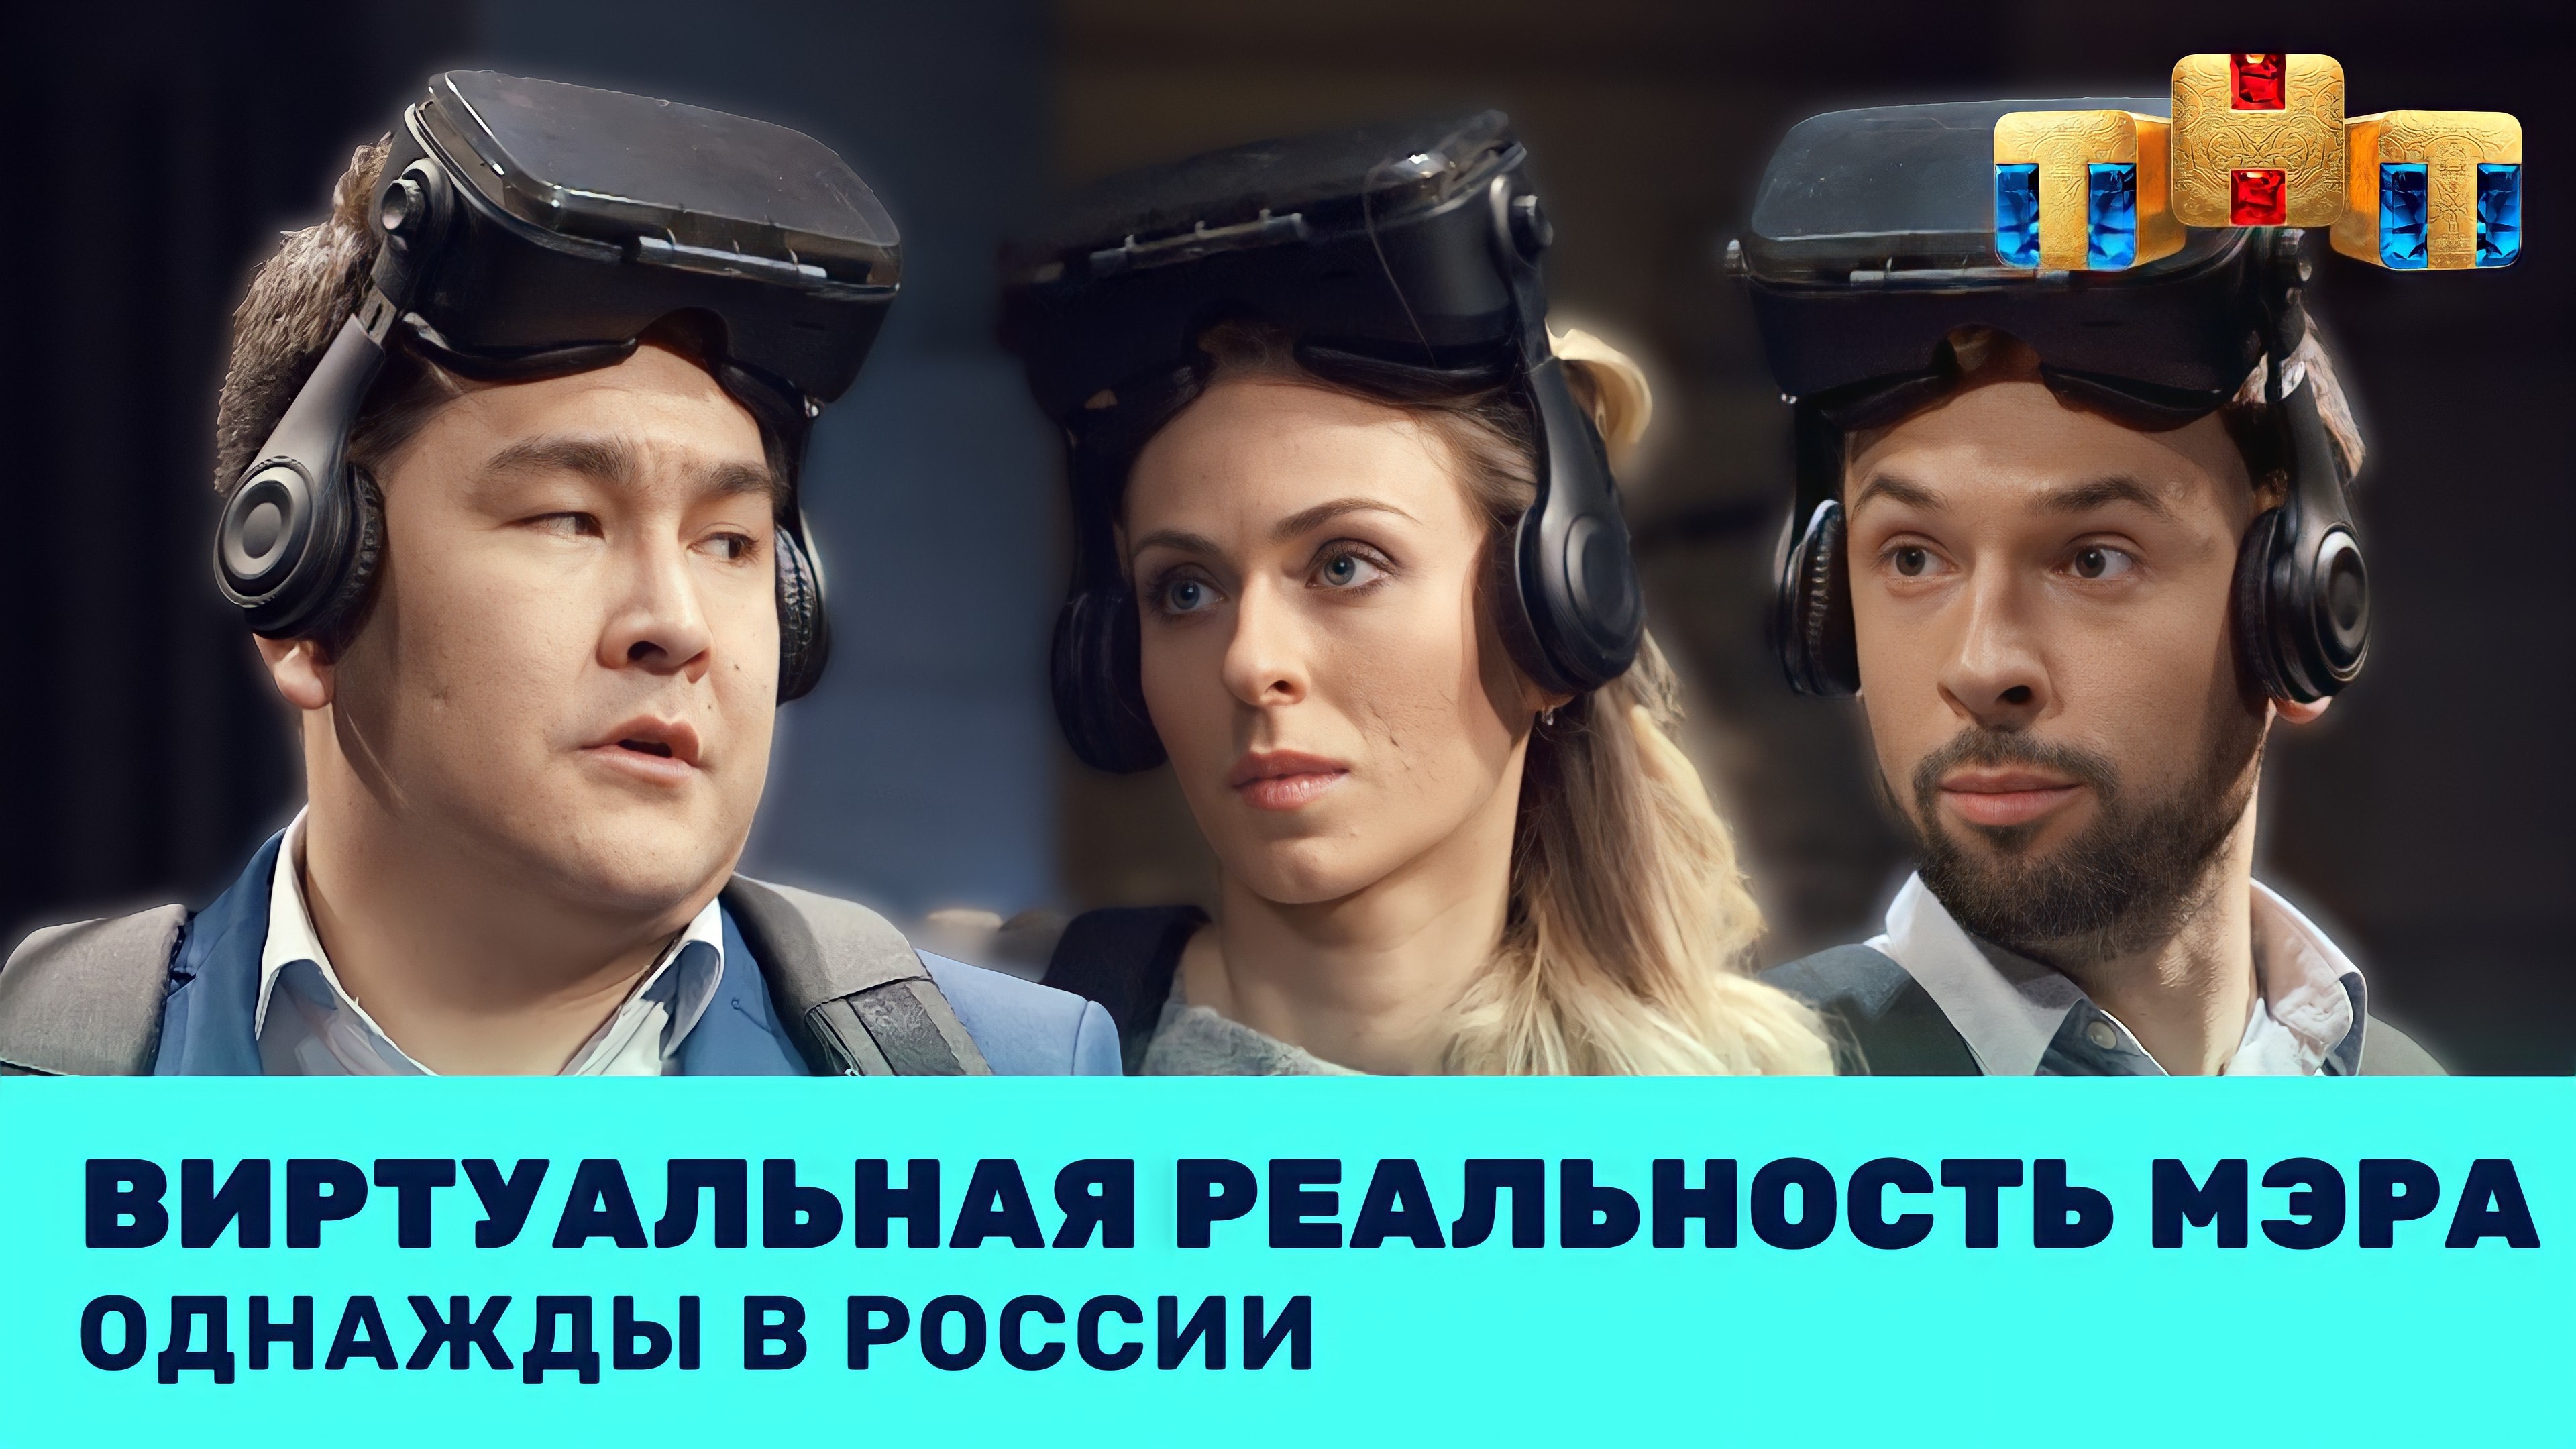 Однажды в России: Виртуальная реальность мэра